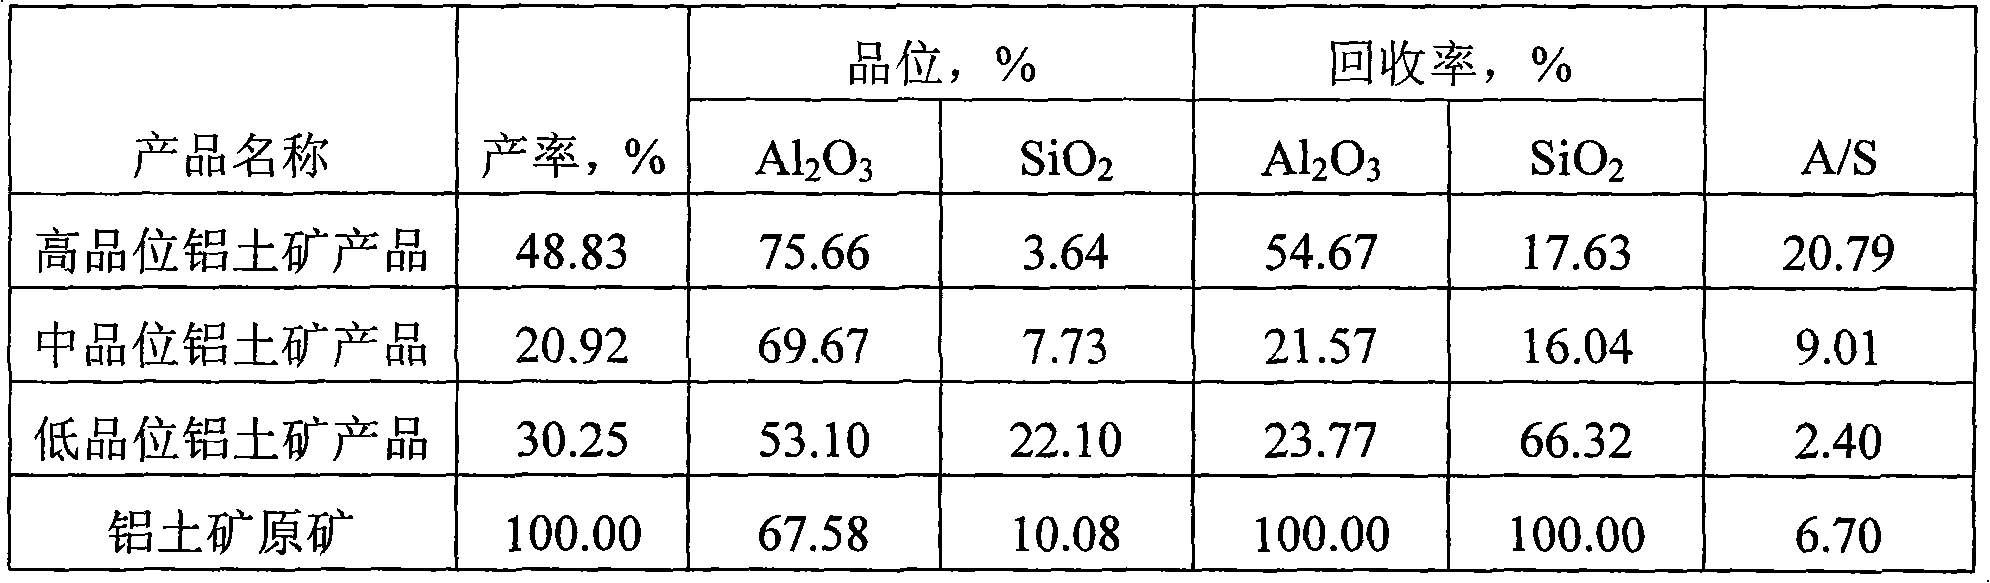 Beneficiating method of diaspore type bauxite